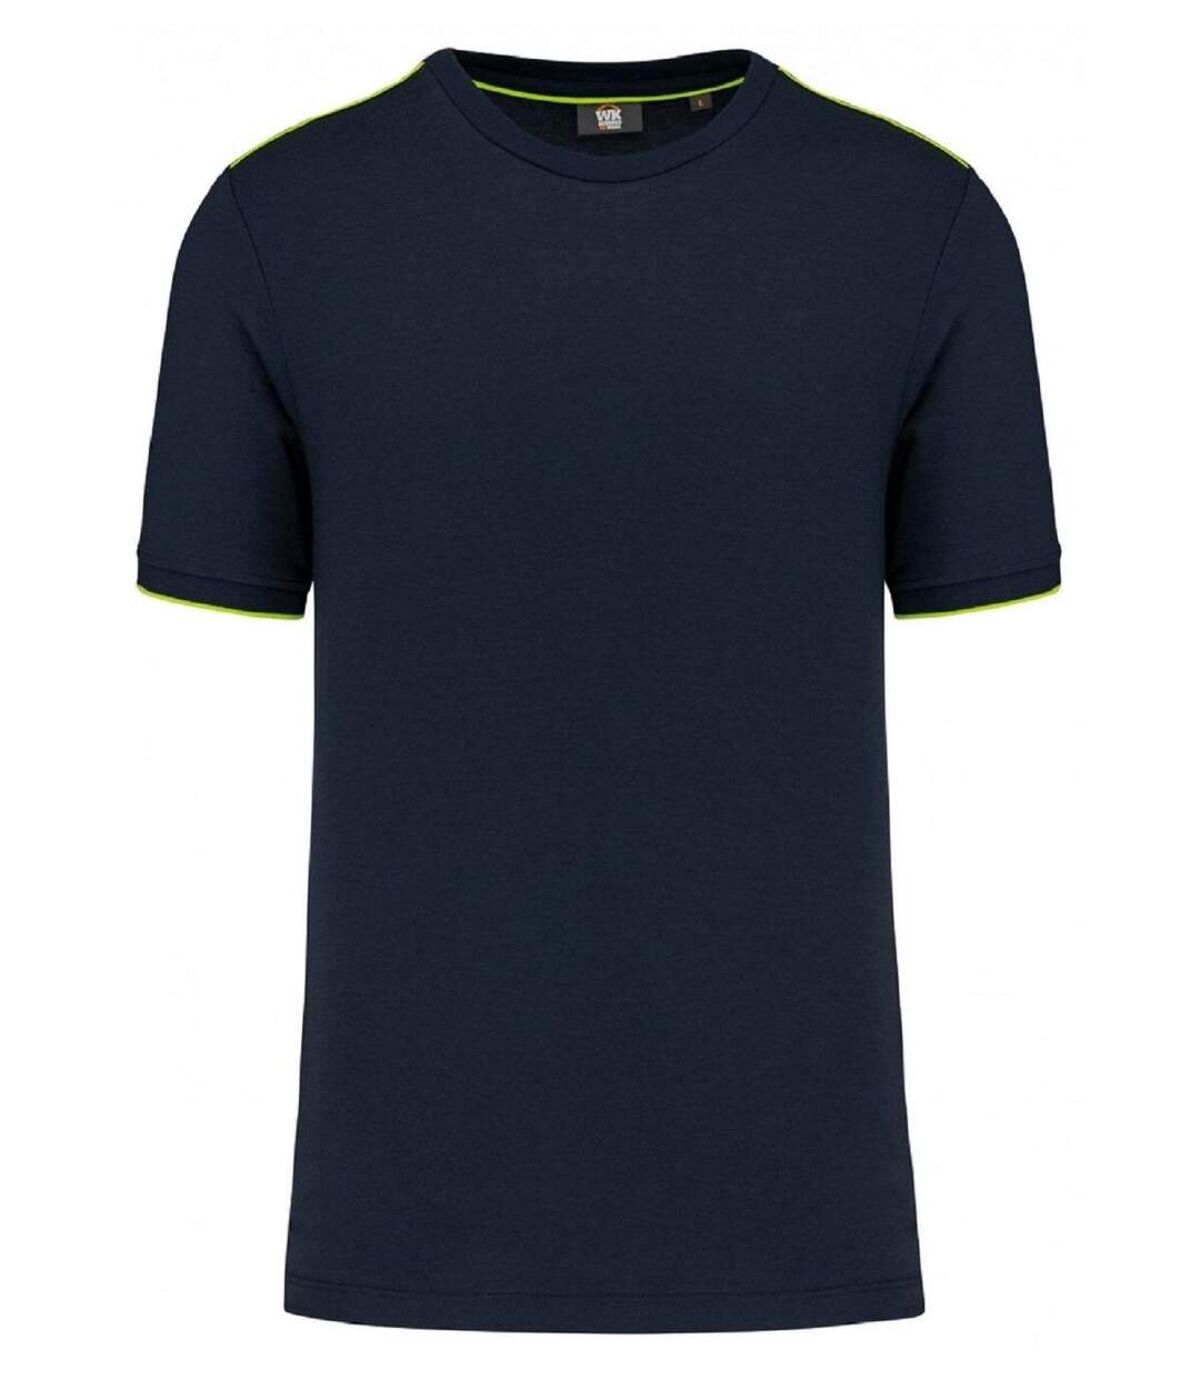 T-shirt professionnel DayToDay pour homme - WK3020 - bleu marine et jaune fluo